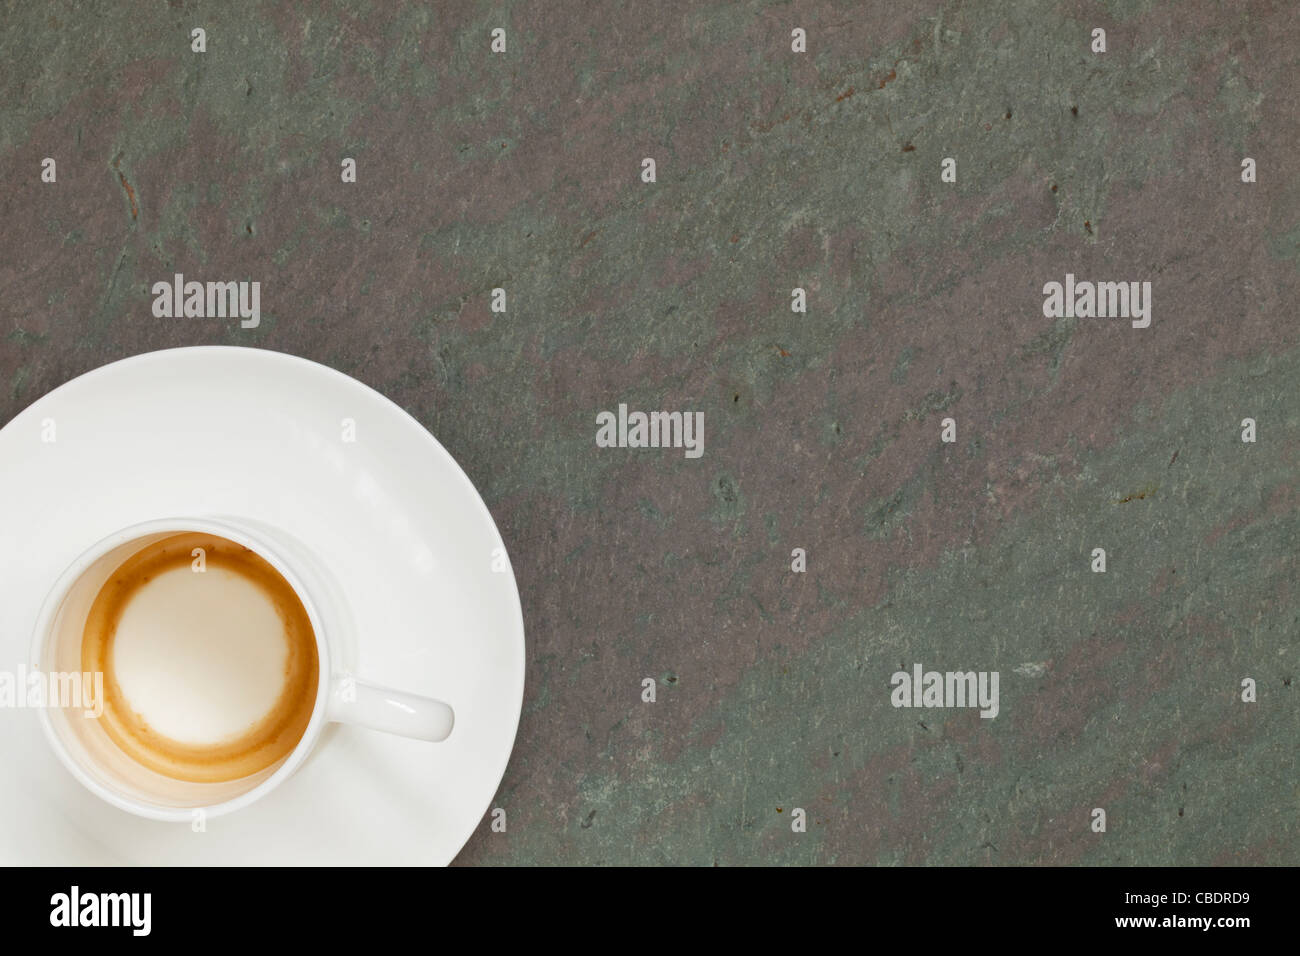 La Chine blanche vide tasse de café espresso sur ardoise table en pierre Banque D'Images